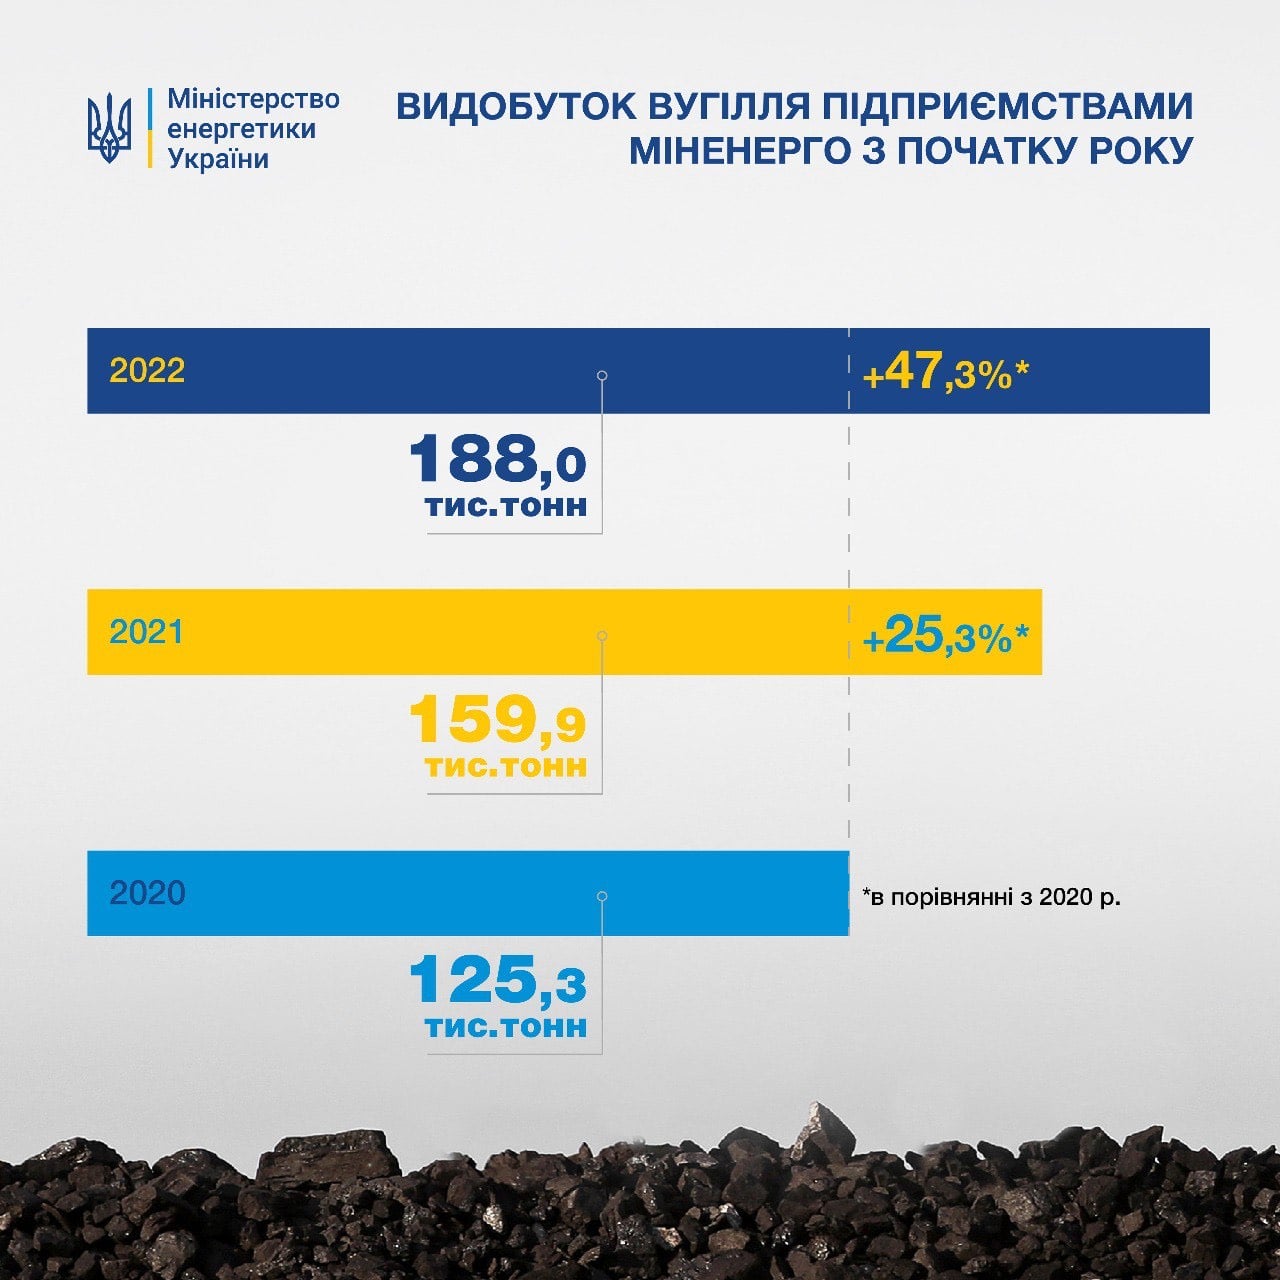 Украина увеличила добычу угля с начала года: 188 000 тонн за 20 дней